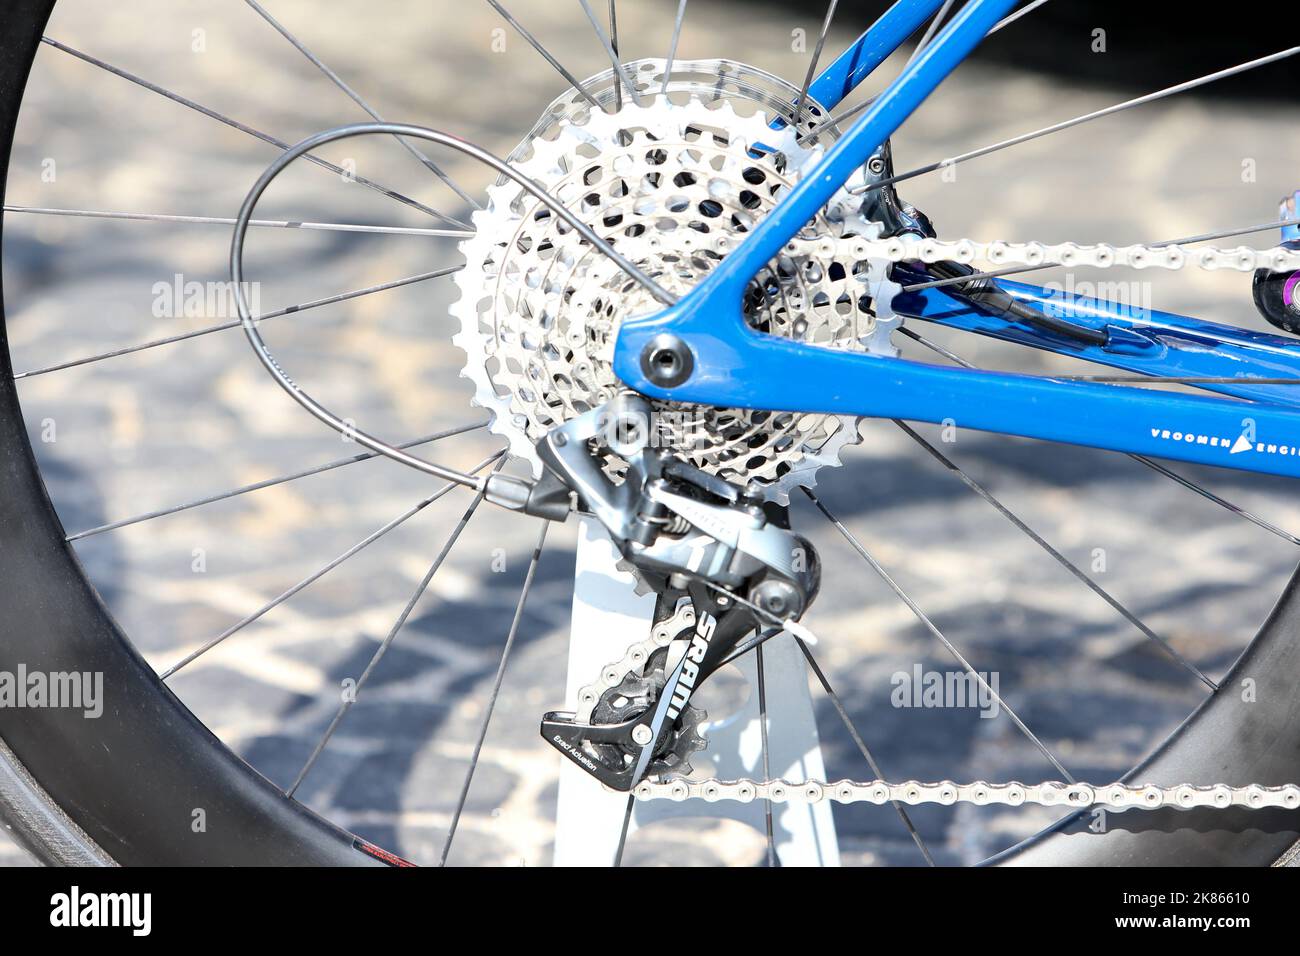 Die üppige Verzahnung der 1x Antriebskette der Aqua Blue Sportbikes zeigt, wie hügelig die Strecke ist Stockfoto